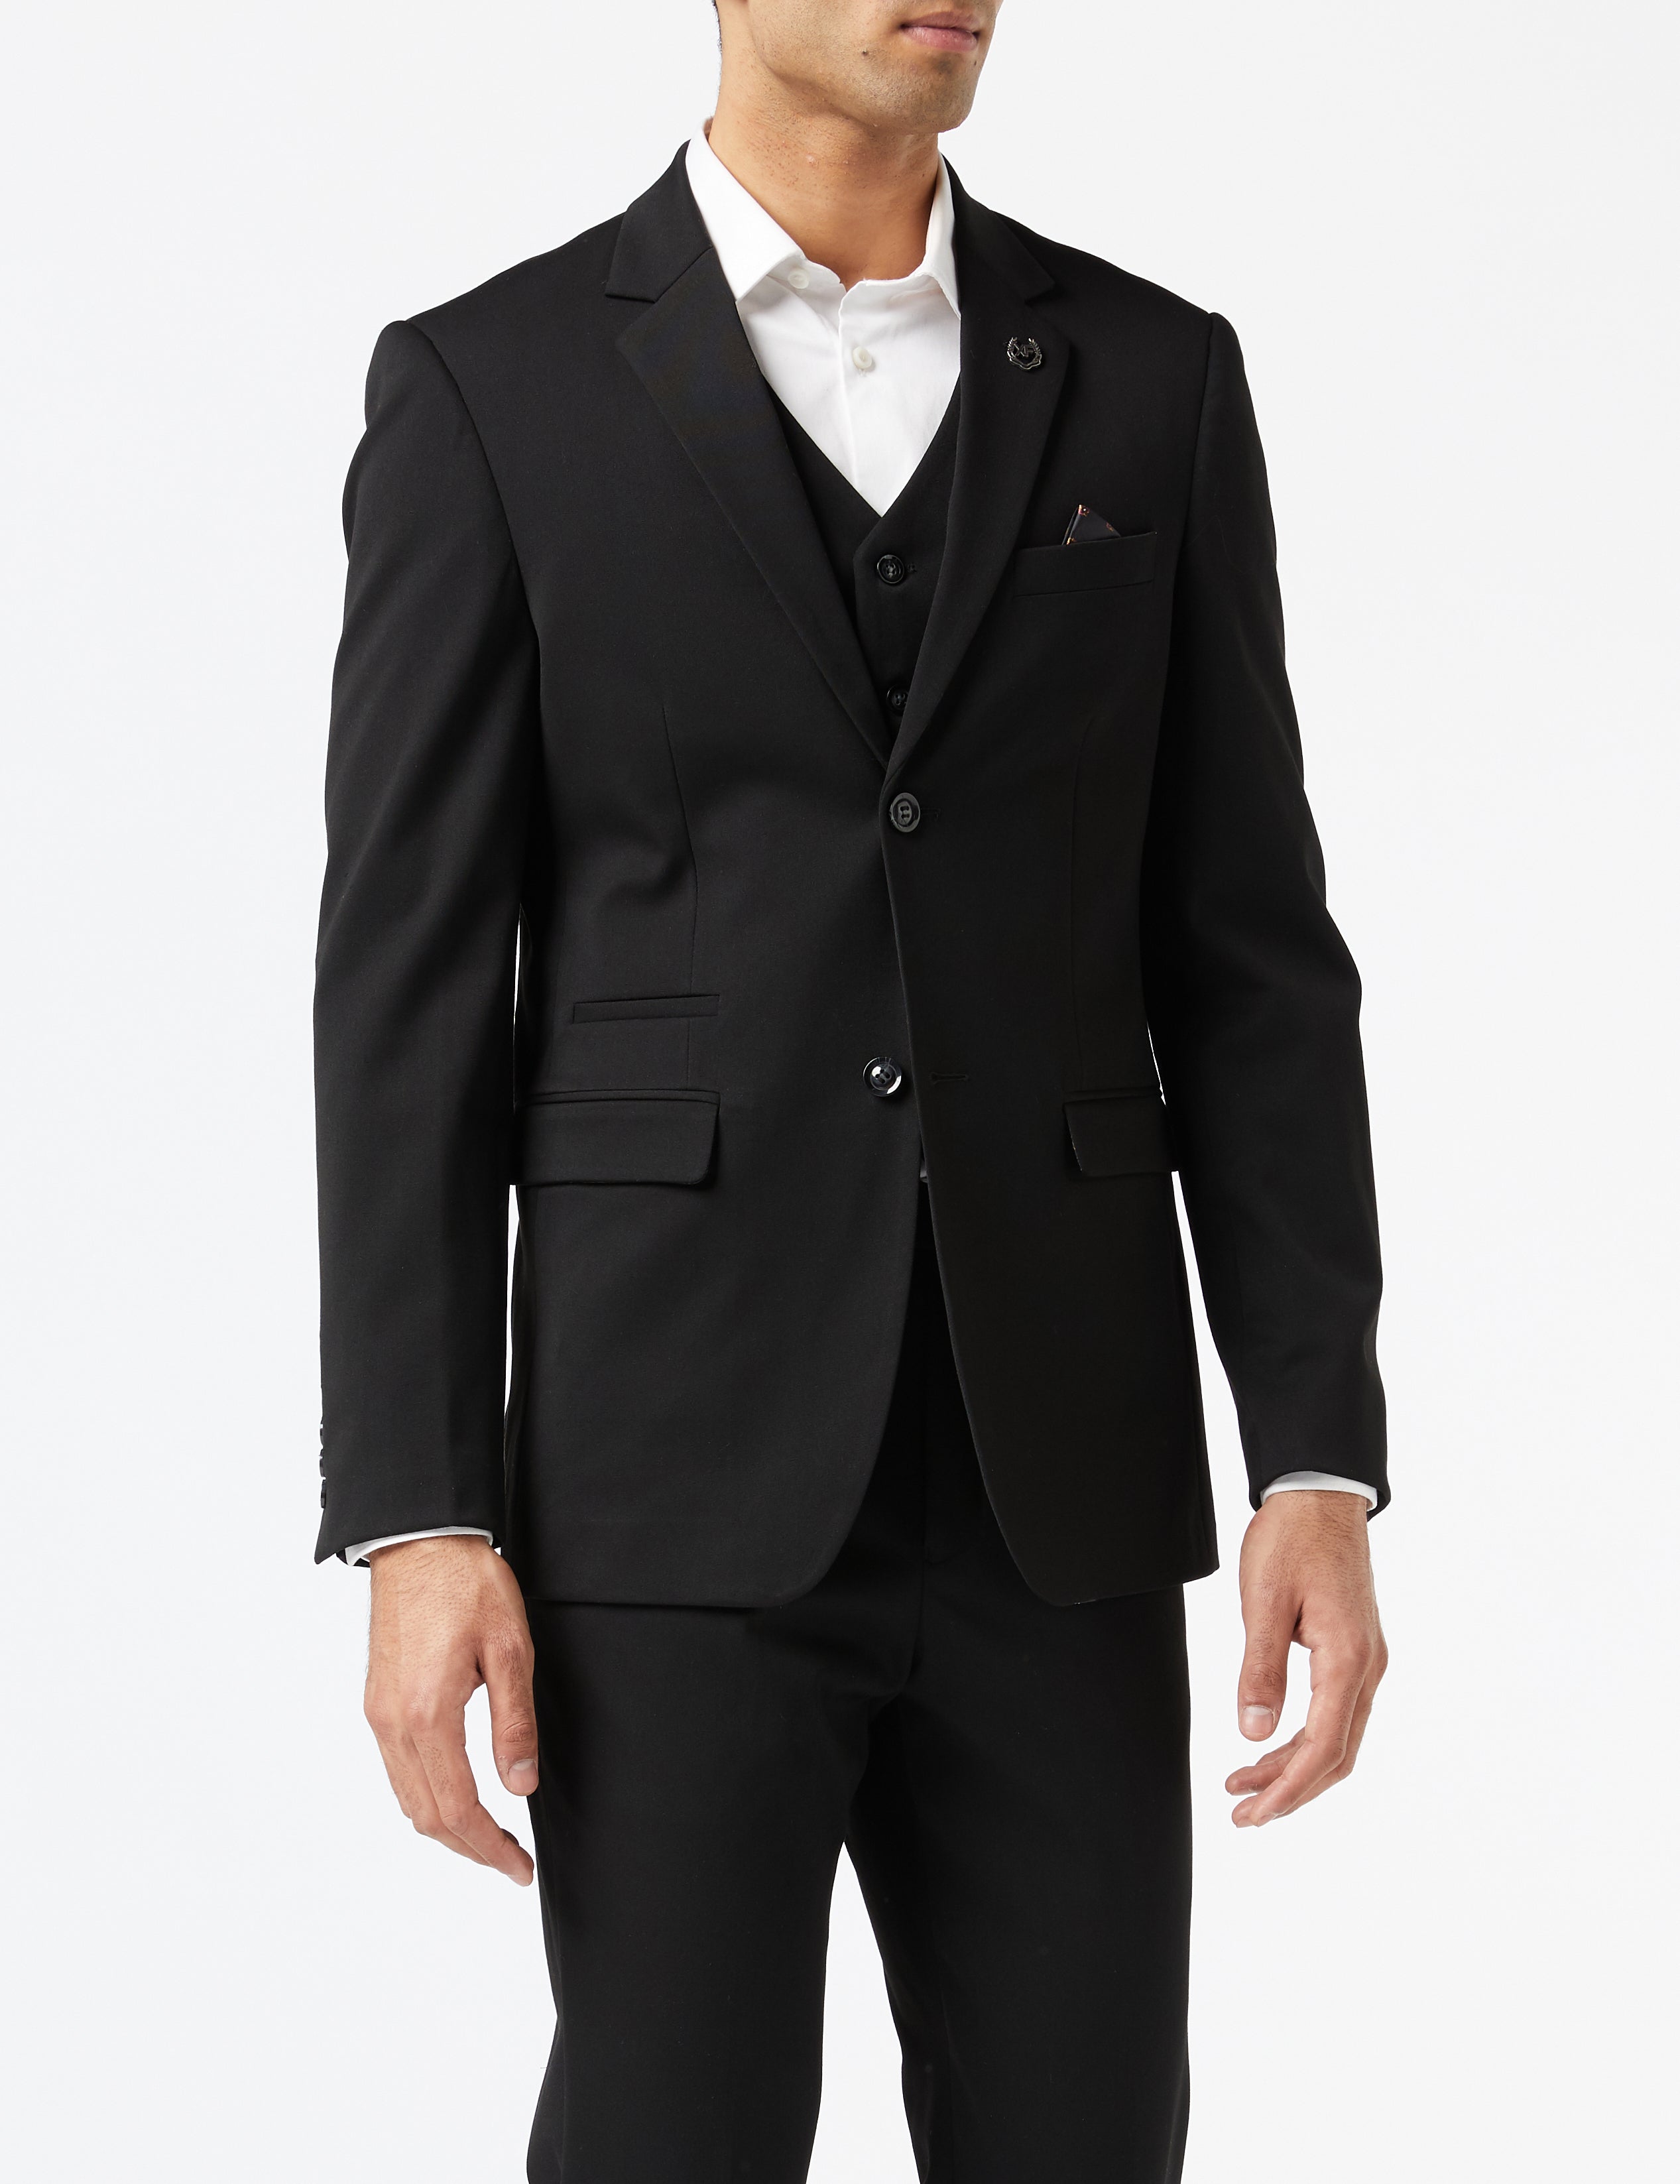 JROSS - Black 3 Piece Formal Business Suit